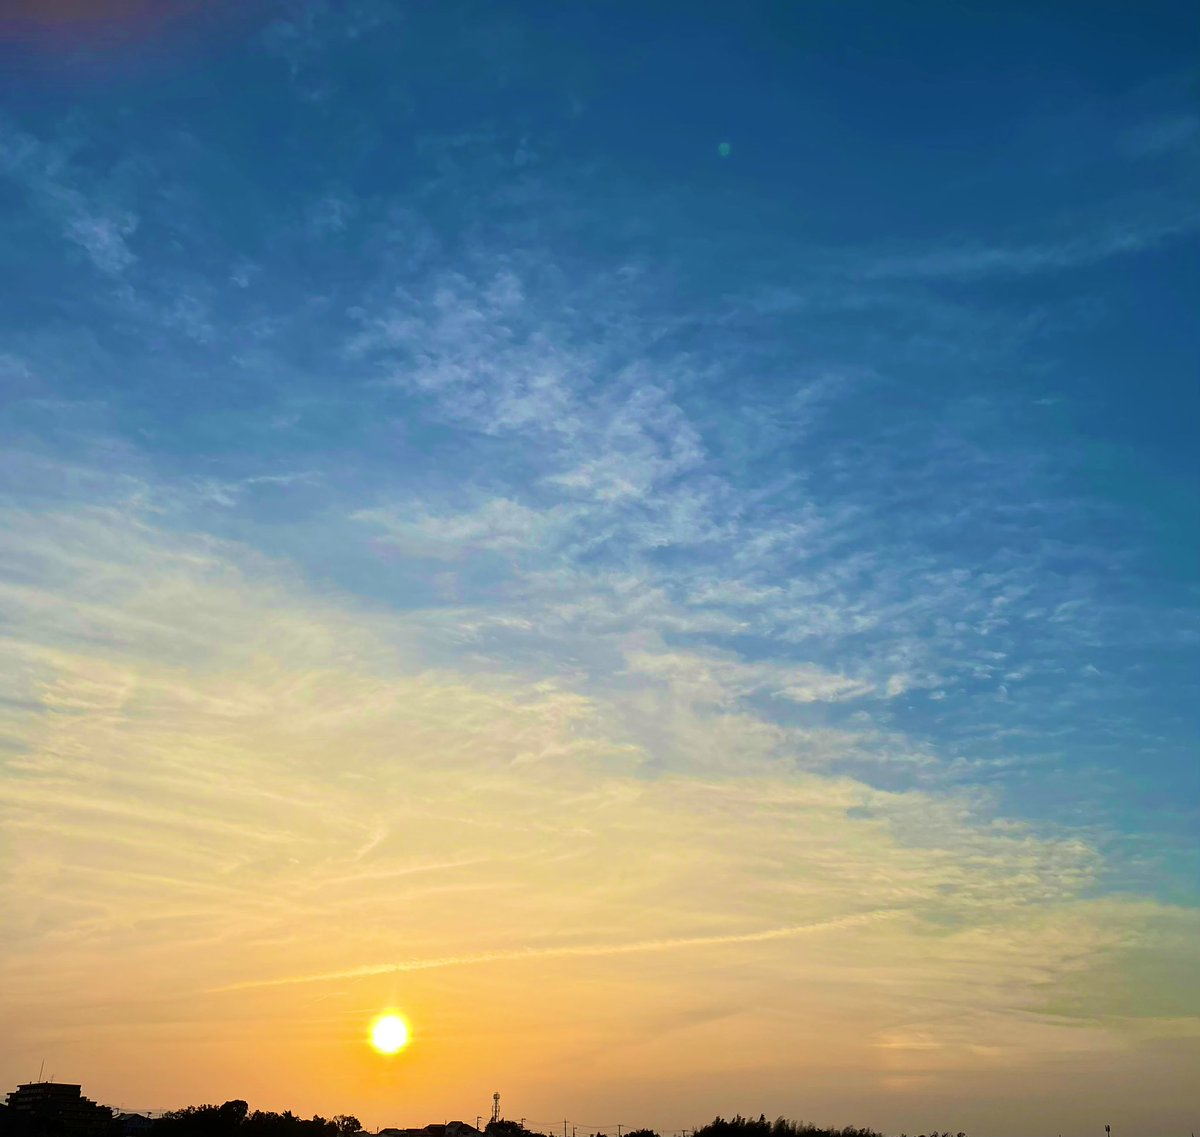 18時ちょっと前、雲多めの夕空📷📱
暑い一日でした🥵
#日の入り
#夕空
#iPhone12promax